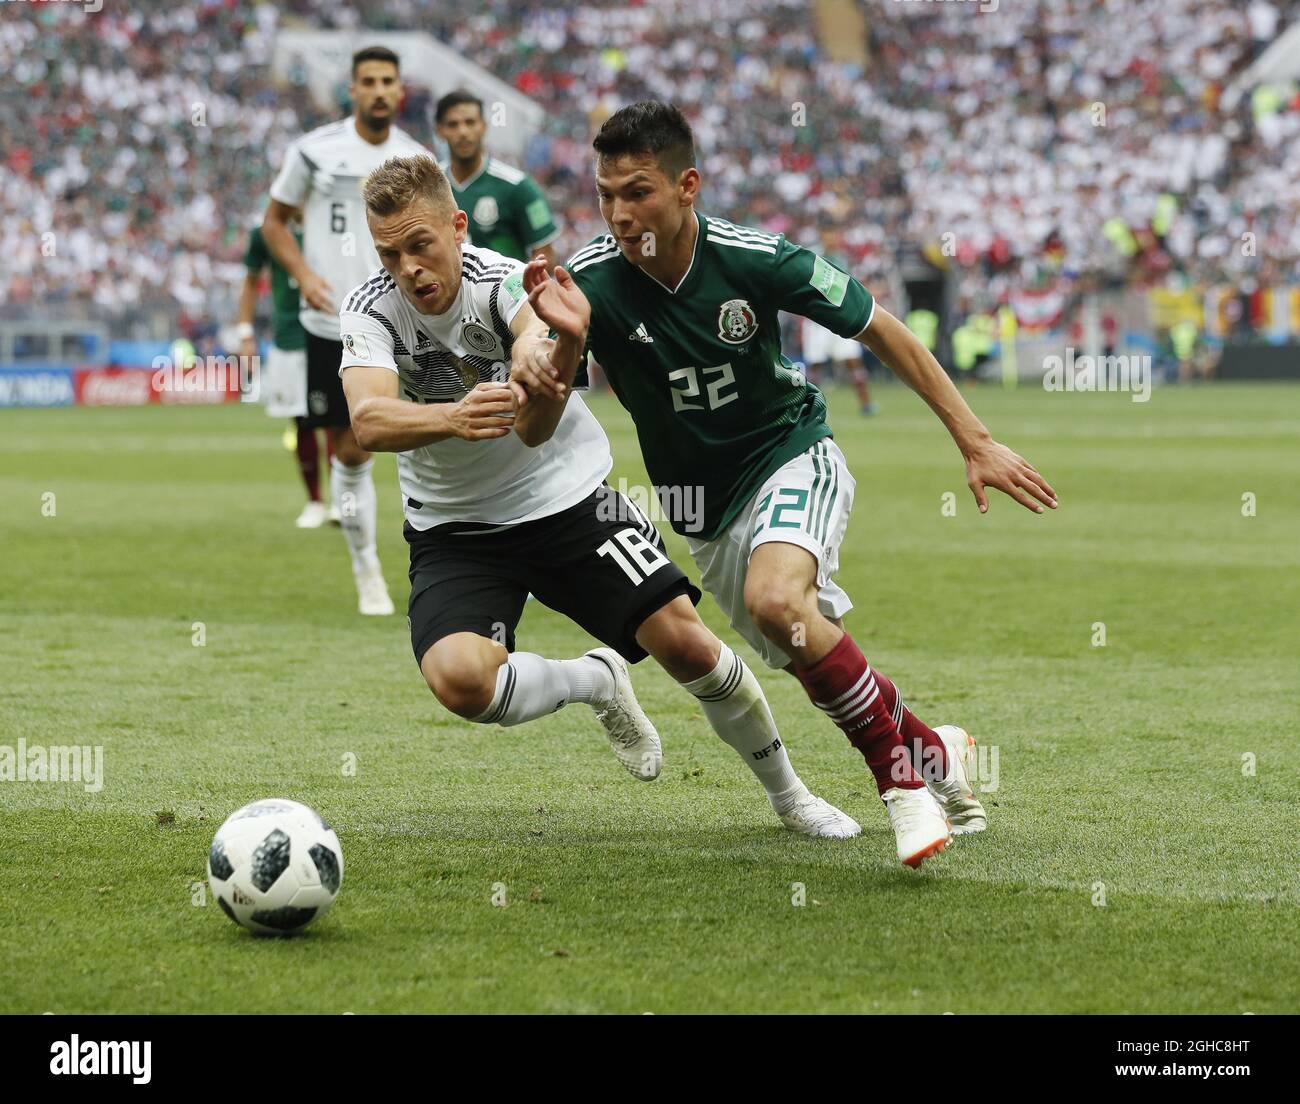 2018 Moscou Rússia Torcedores Alemães Mexicanos Nas Arquibancadas Copa Mundo  — Fotografia de Stock Editorial © m.iacobucci.tiscali.it #200258532